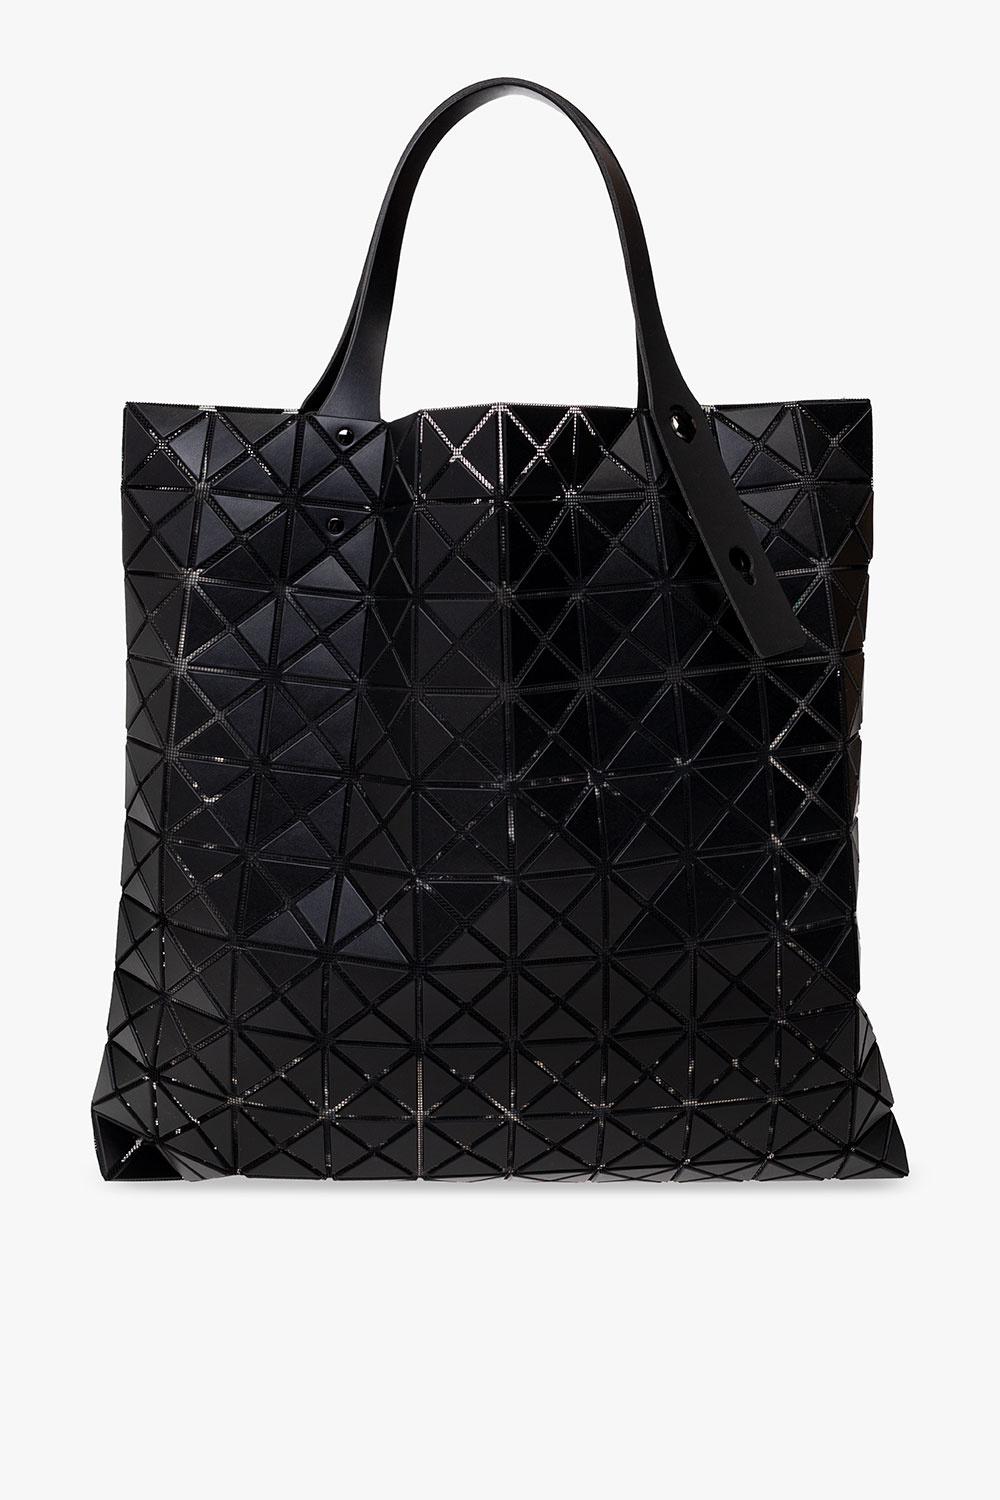 Bao Bao Issey Miyake 'prism Matte' Shopper Bag in Black | Lyst UK